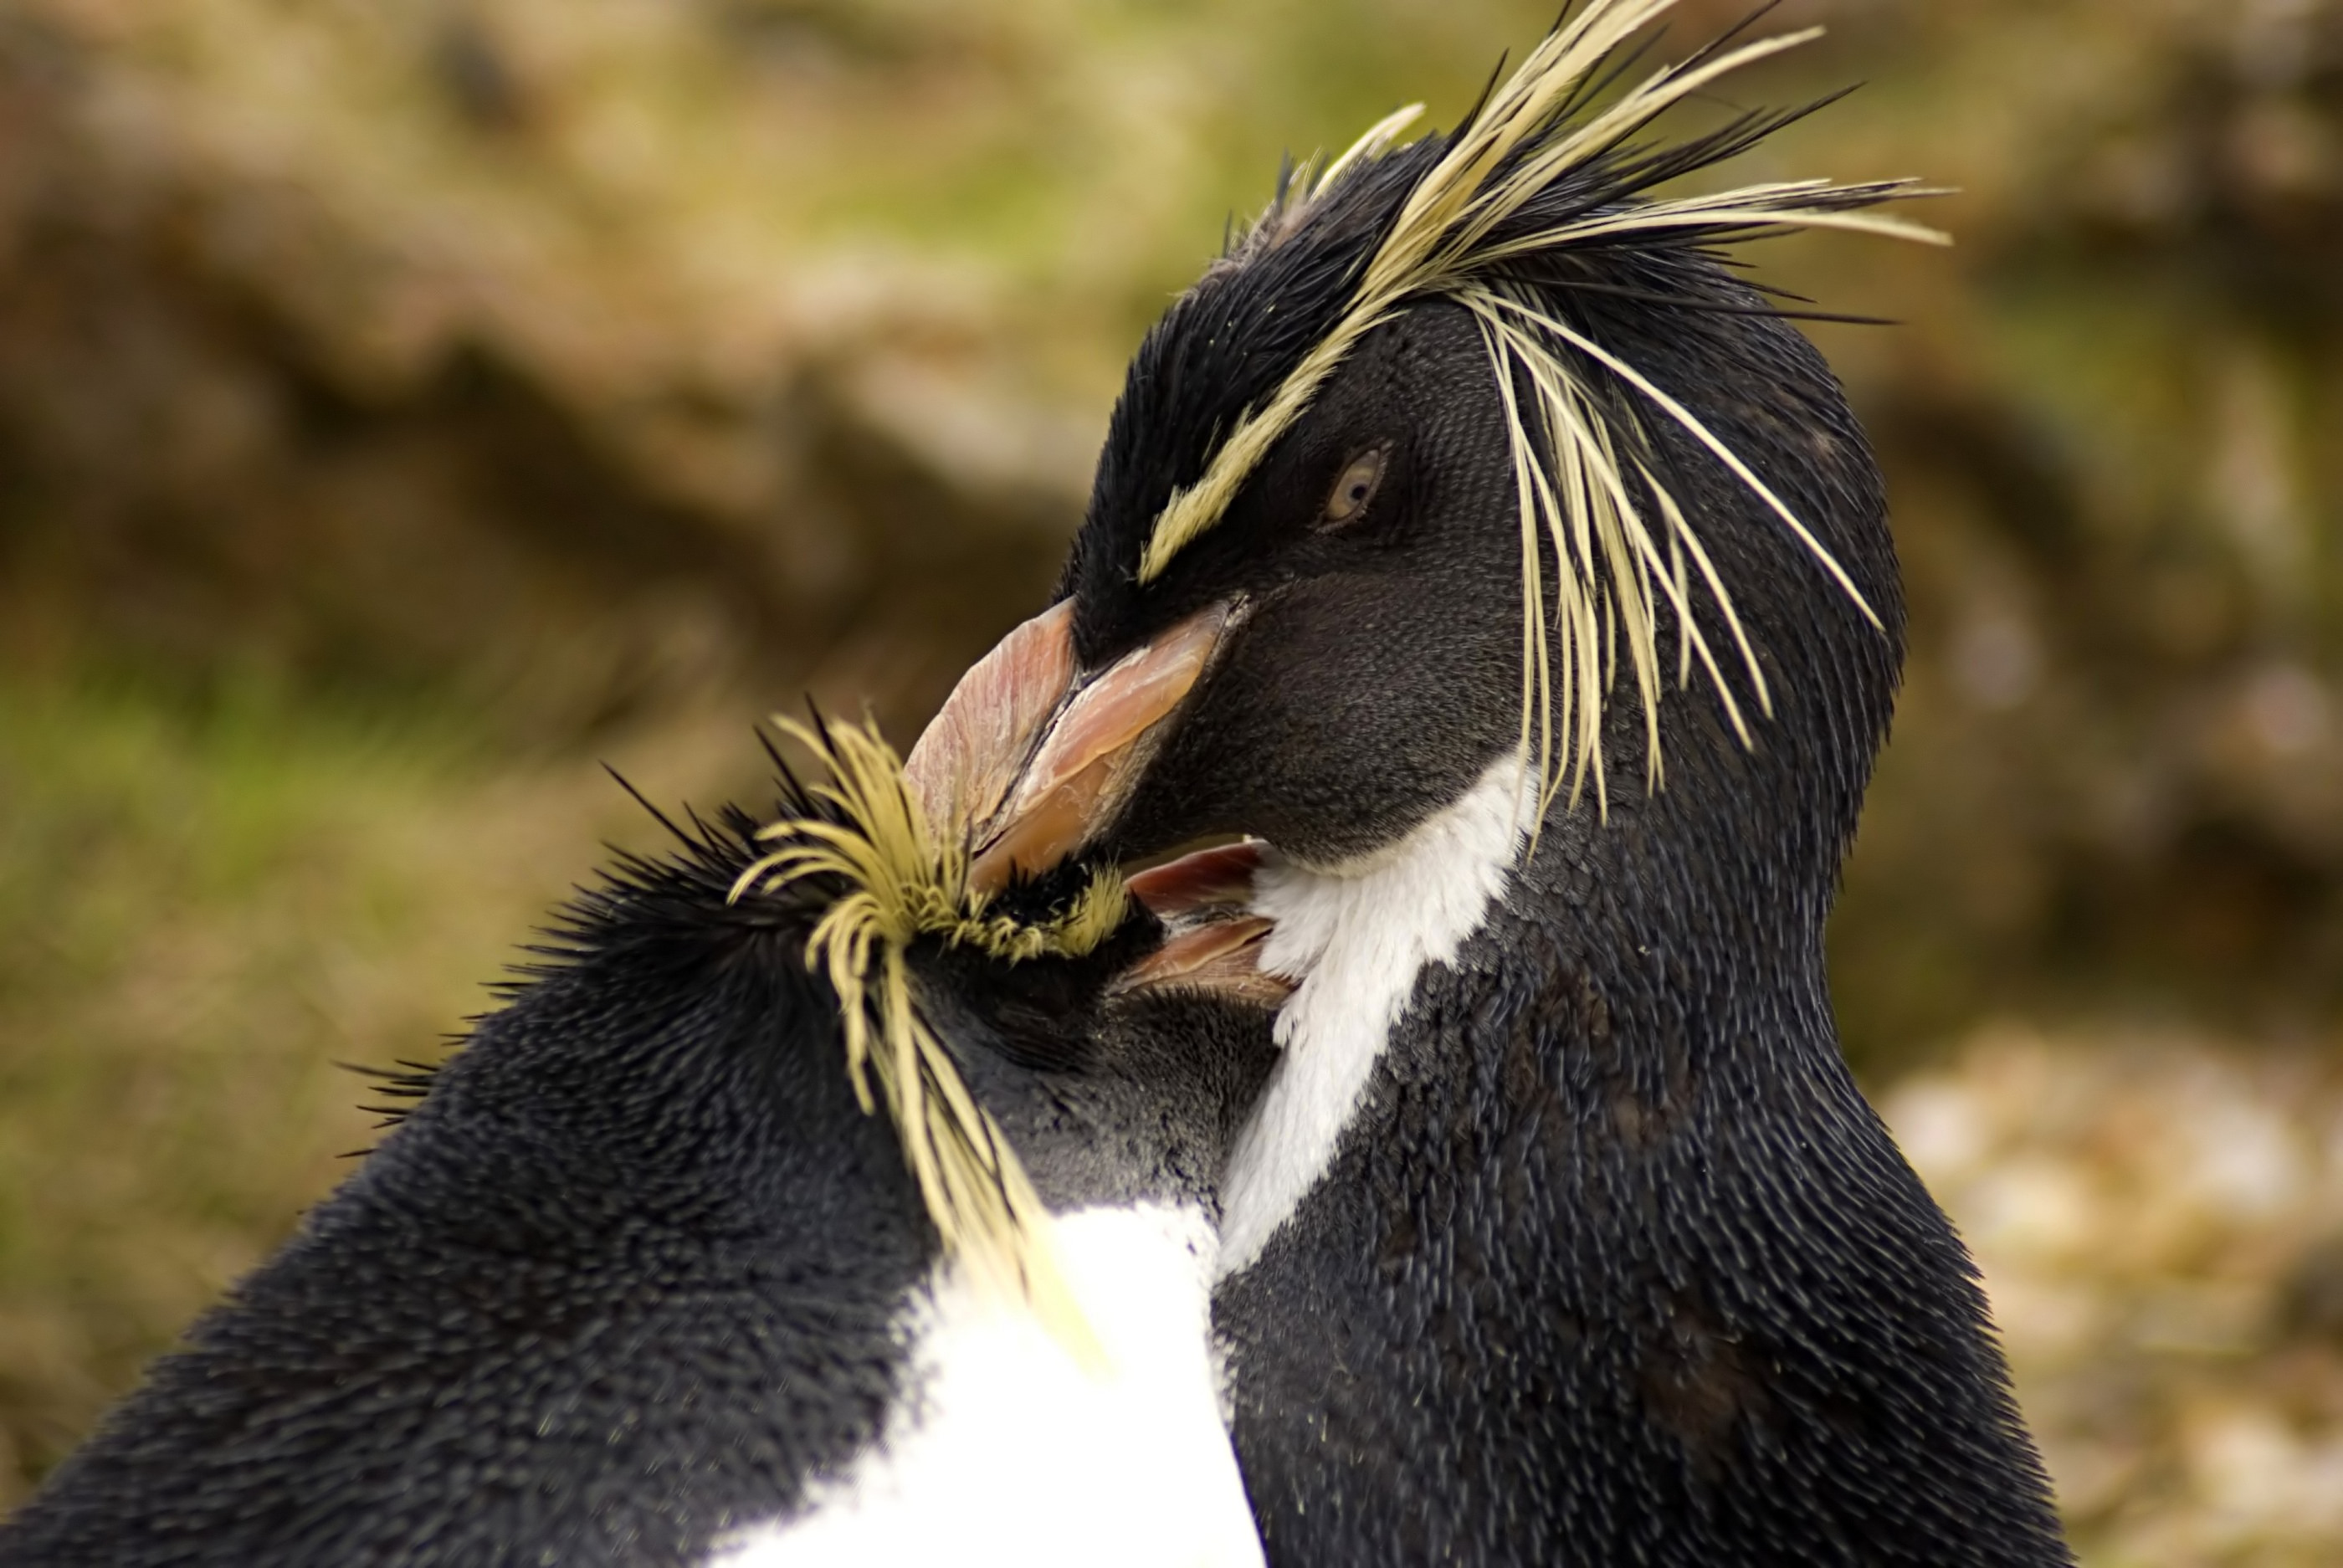 Rockhopper Penguins preening